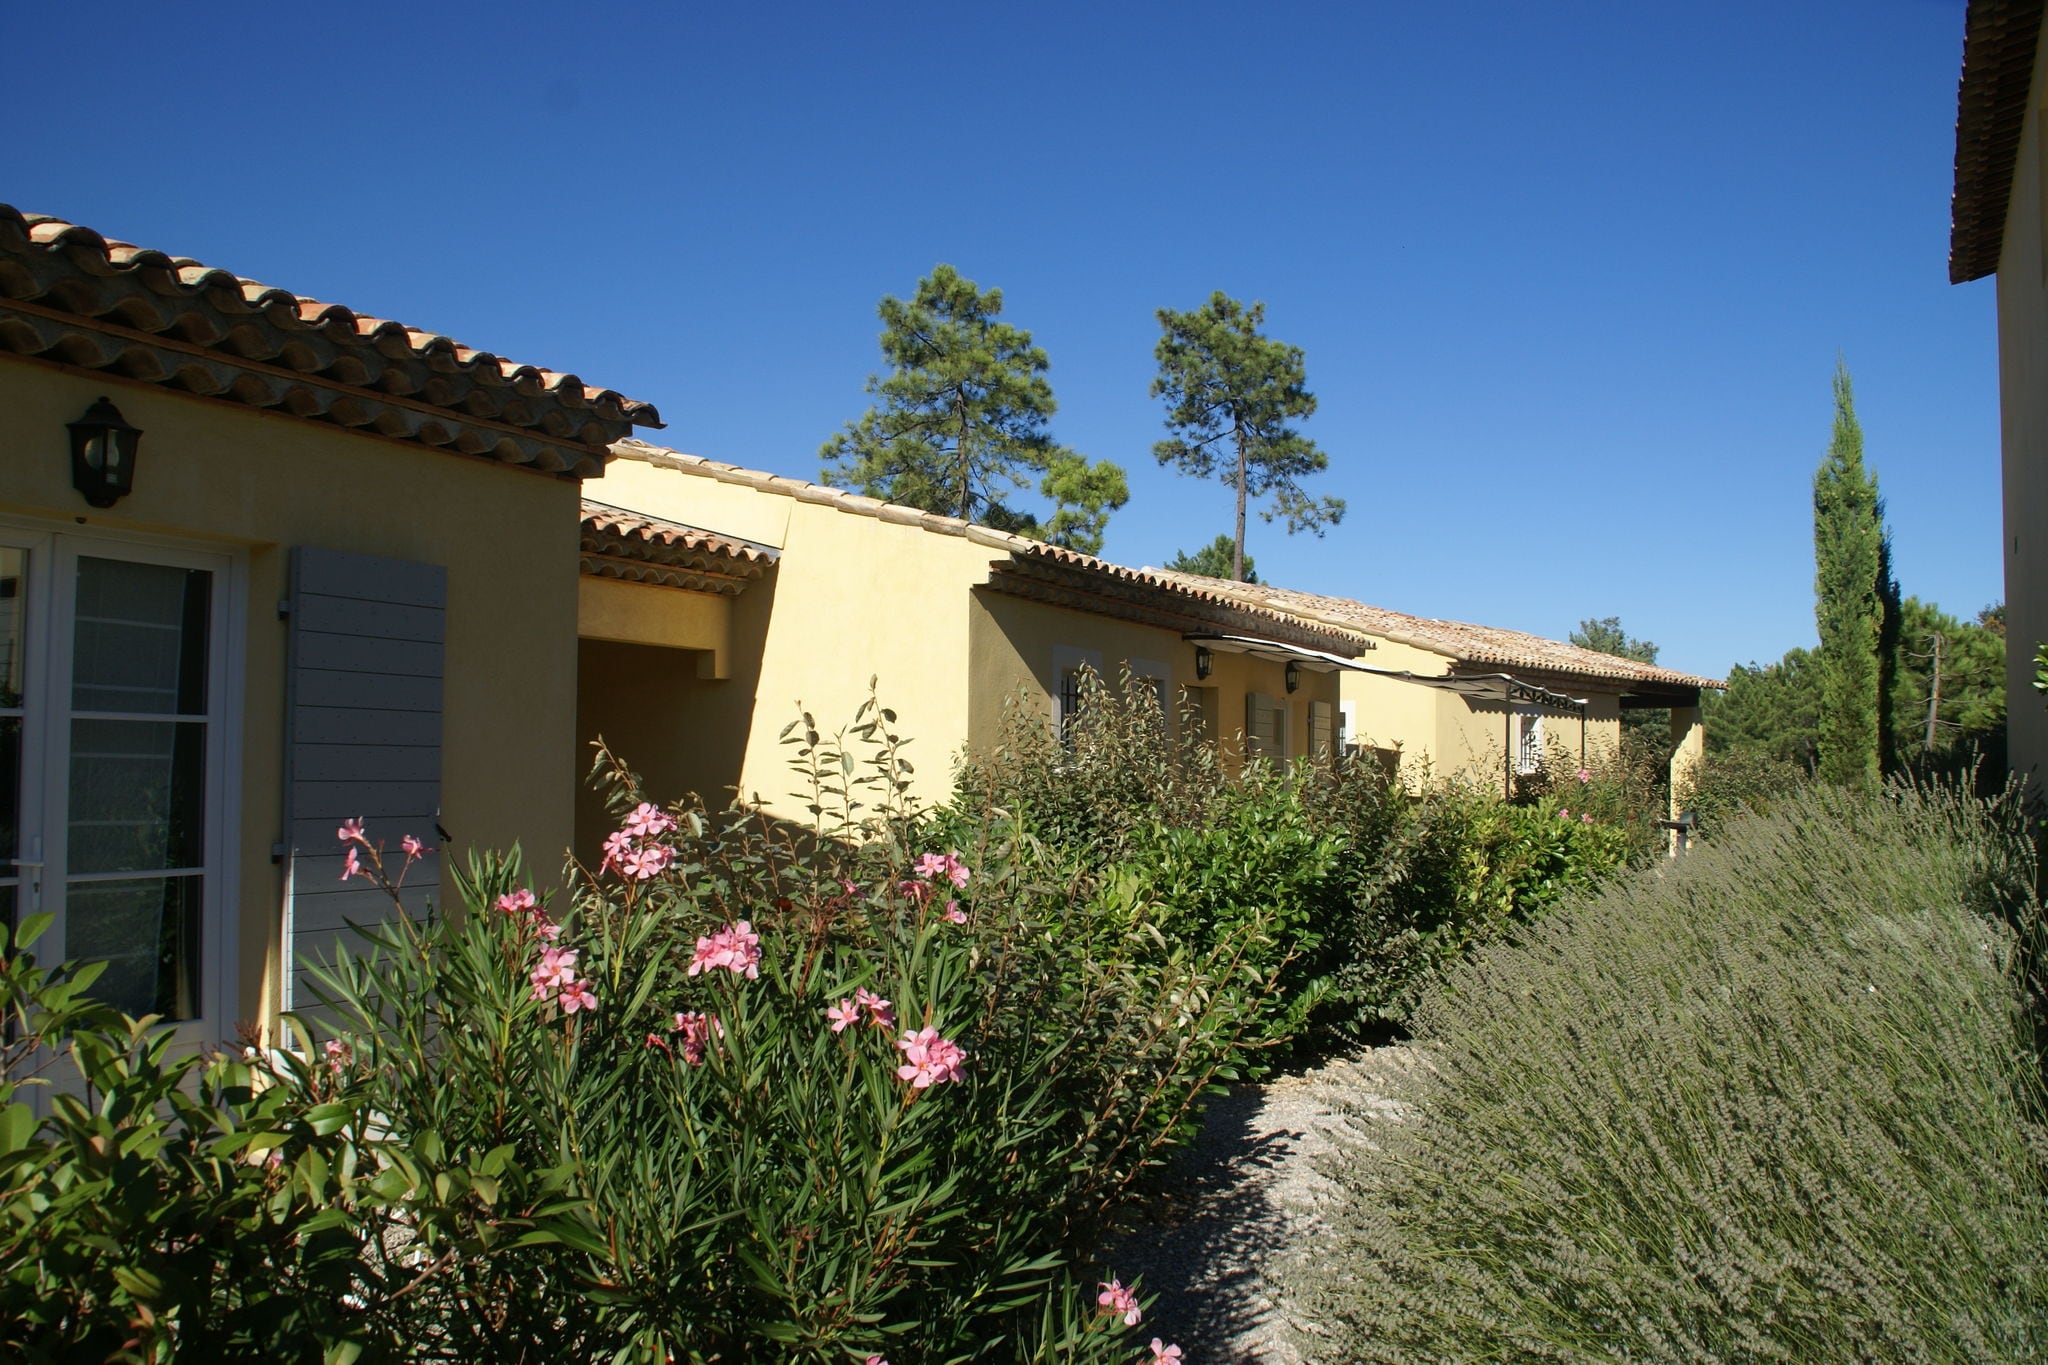 Luxe appartement voor zes personen in résidence in het hart van de Provence